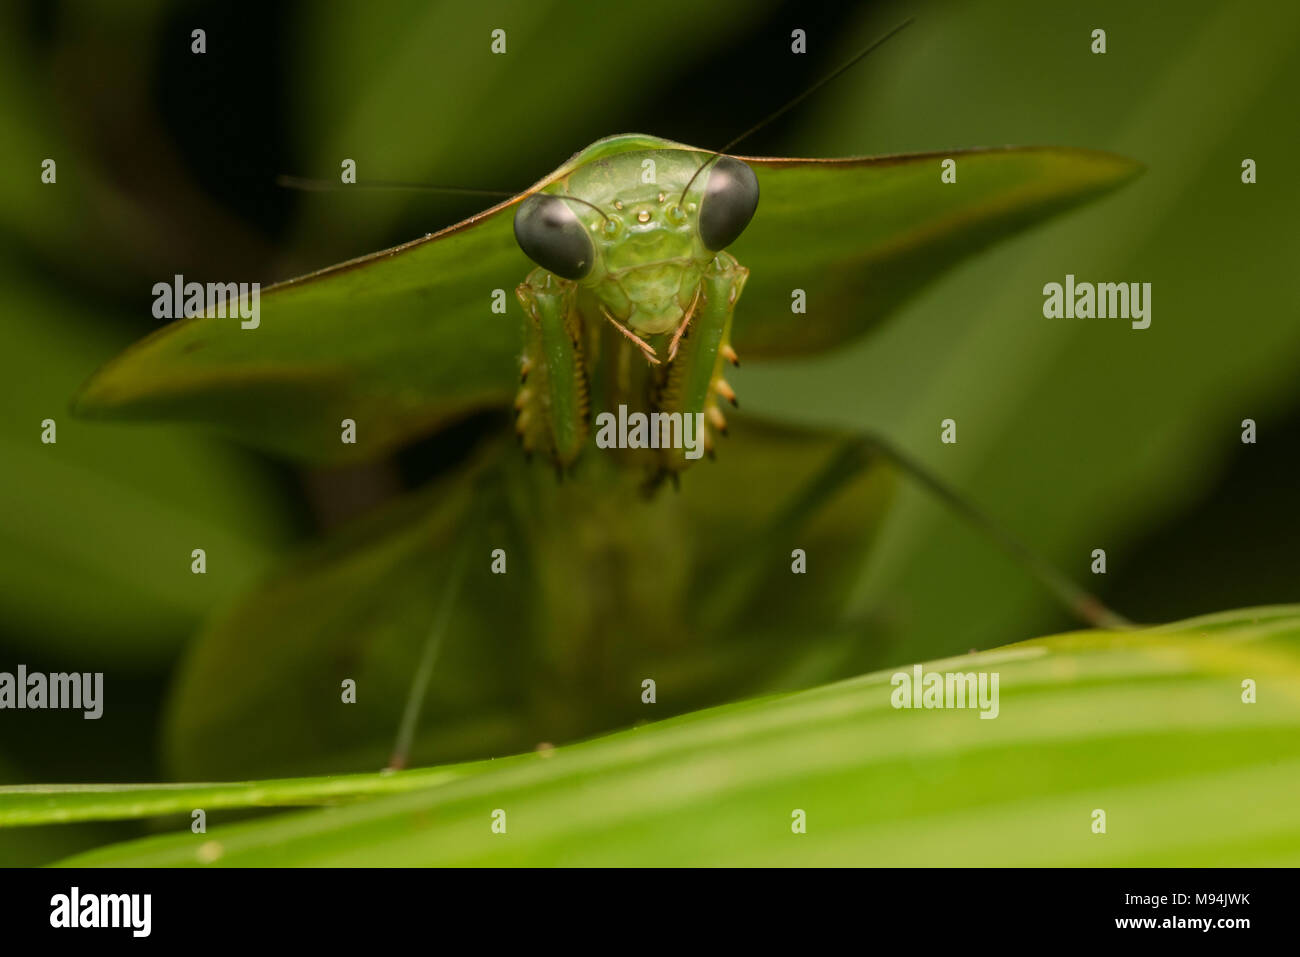 Uno schermo o una foglia mantis (Choeradodis specie) si basa sulla sua incredibile camouflage per mescolarsi con le piante e rimanere nascosto. Foto Stock